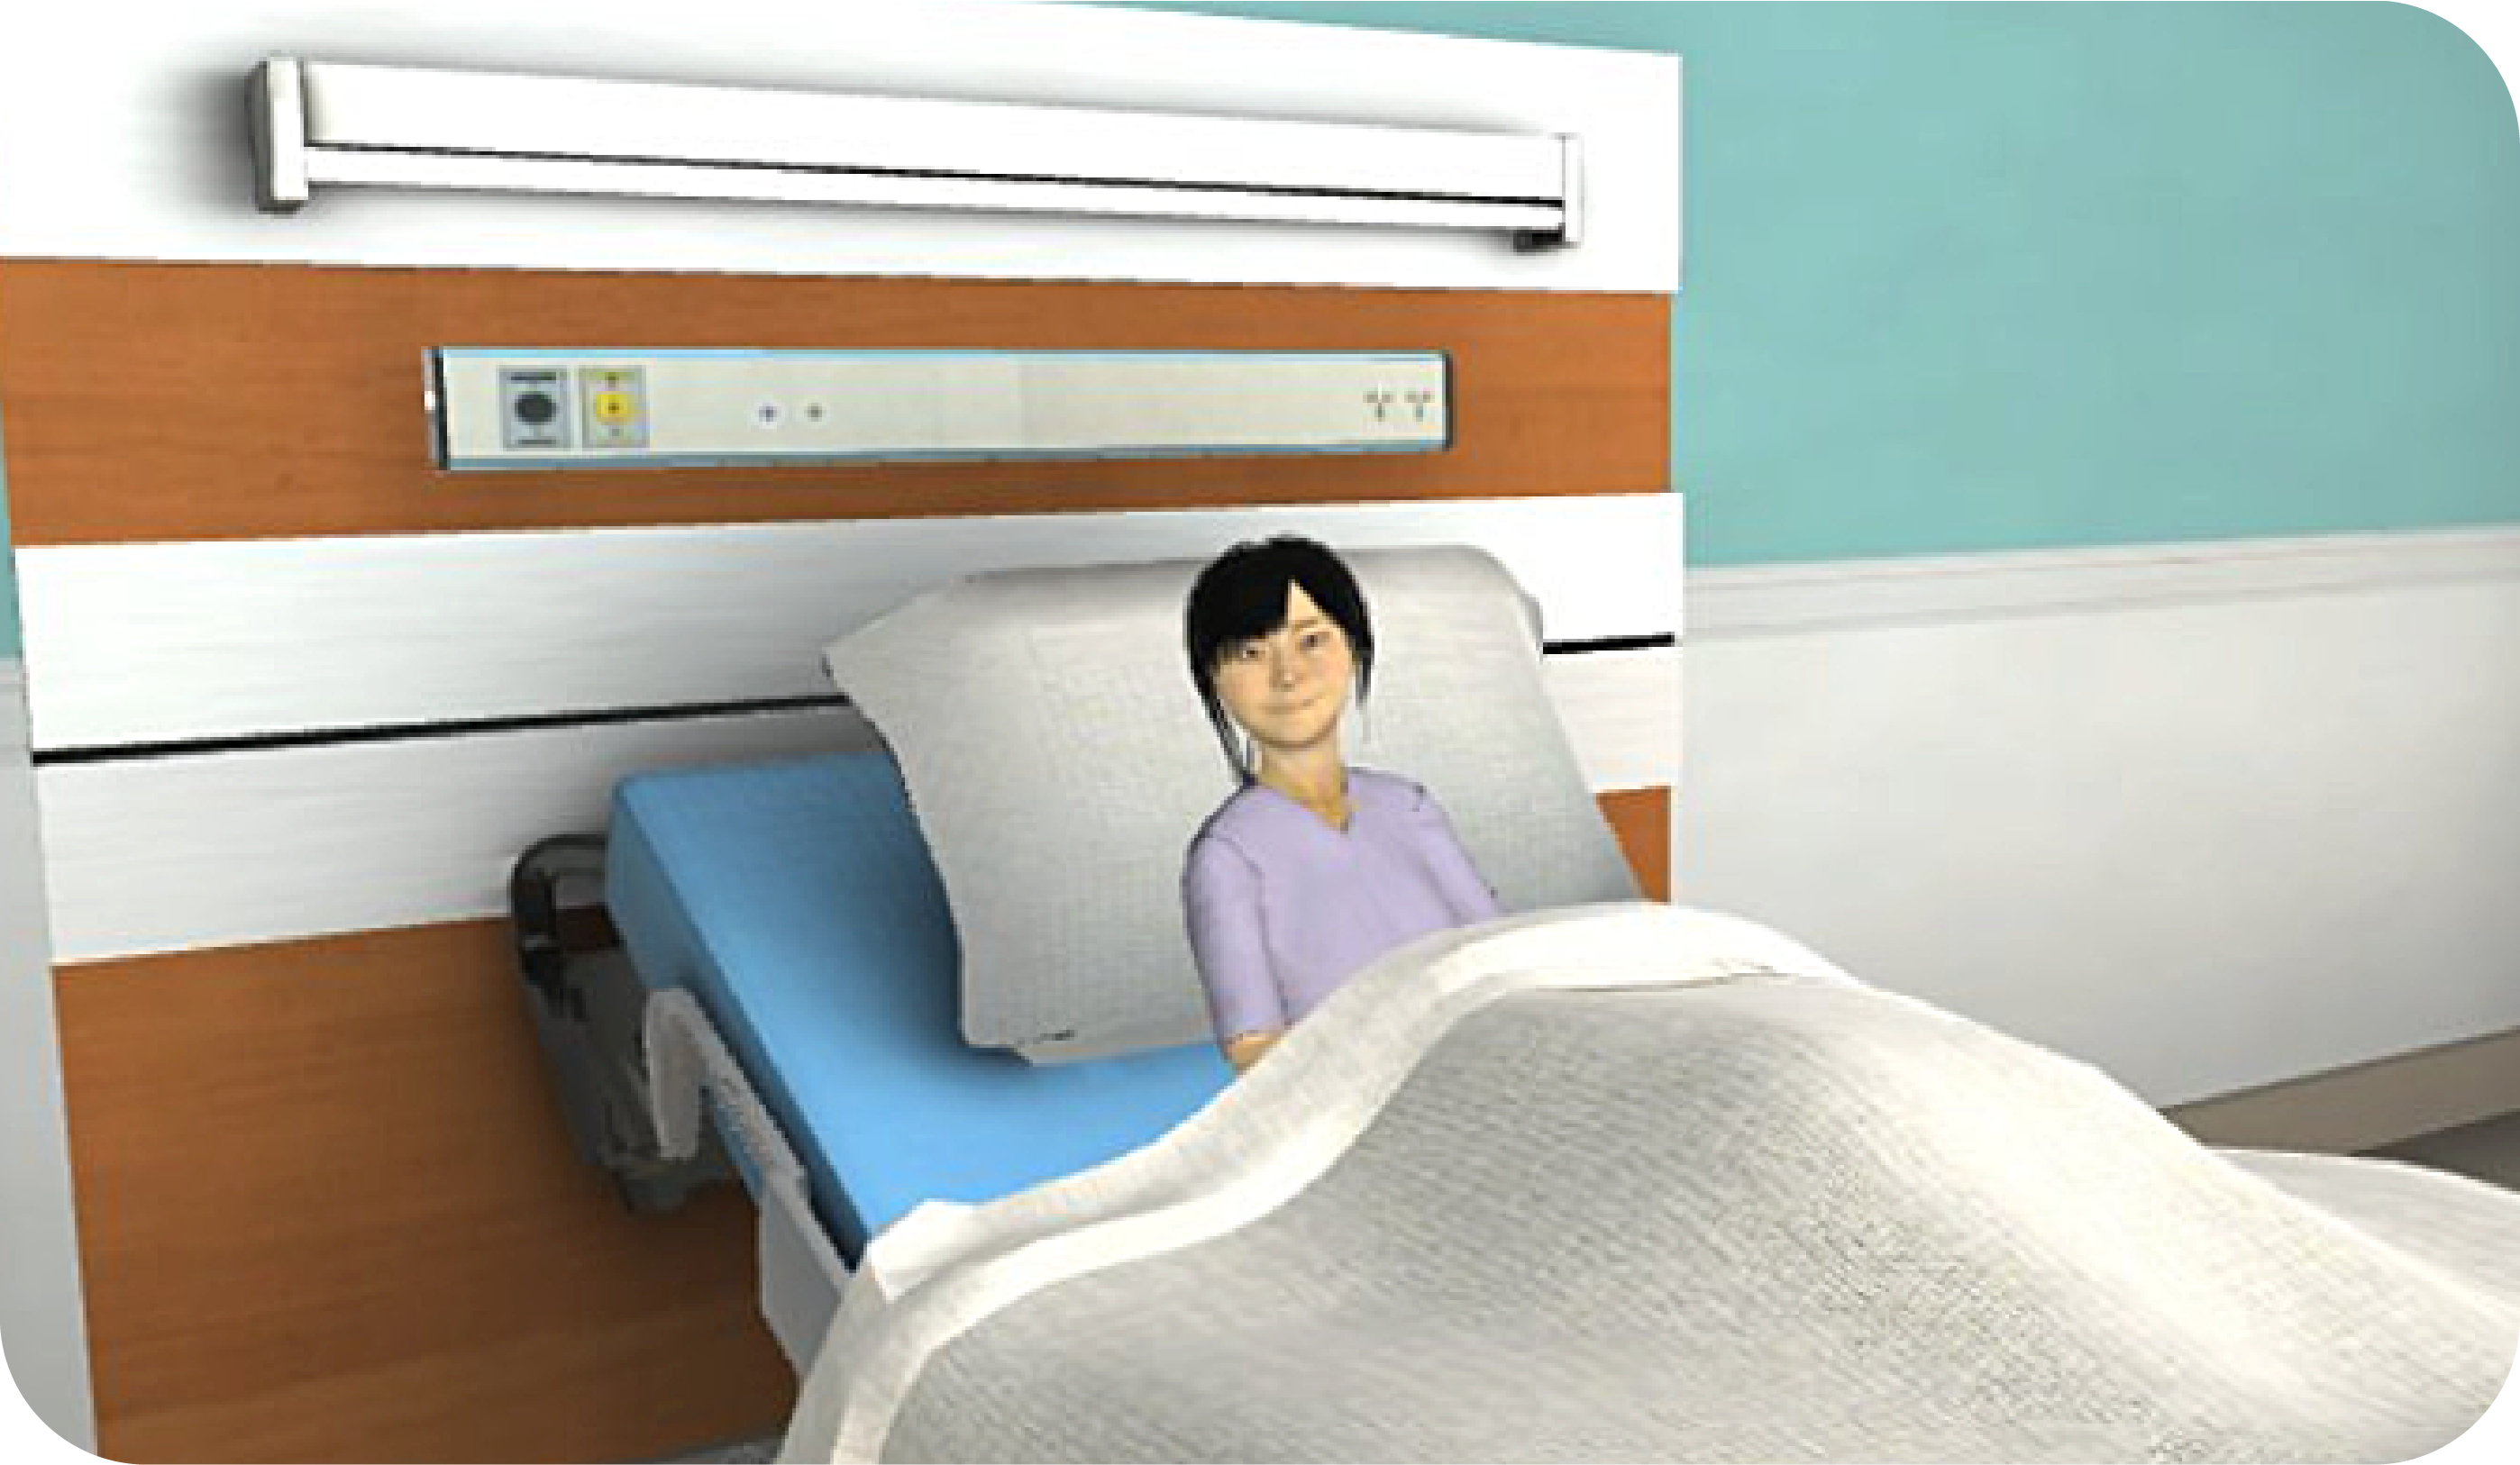 PCS_Patient simulation room-01